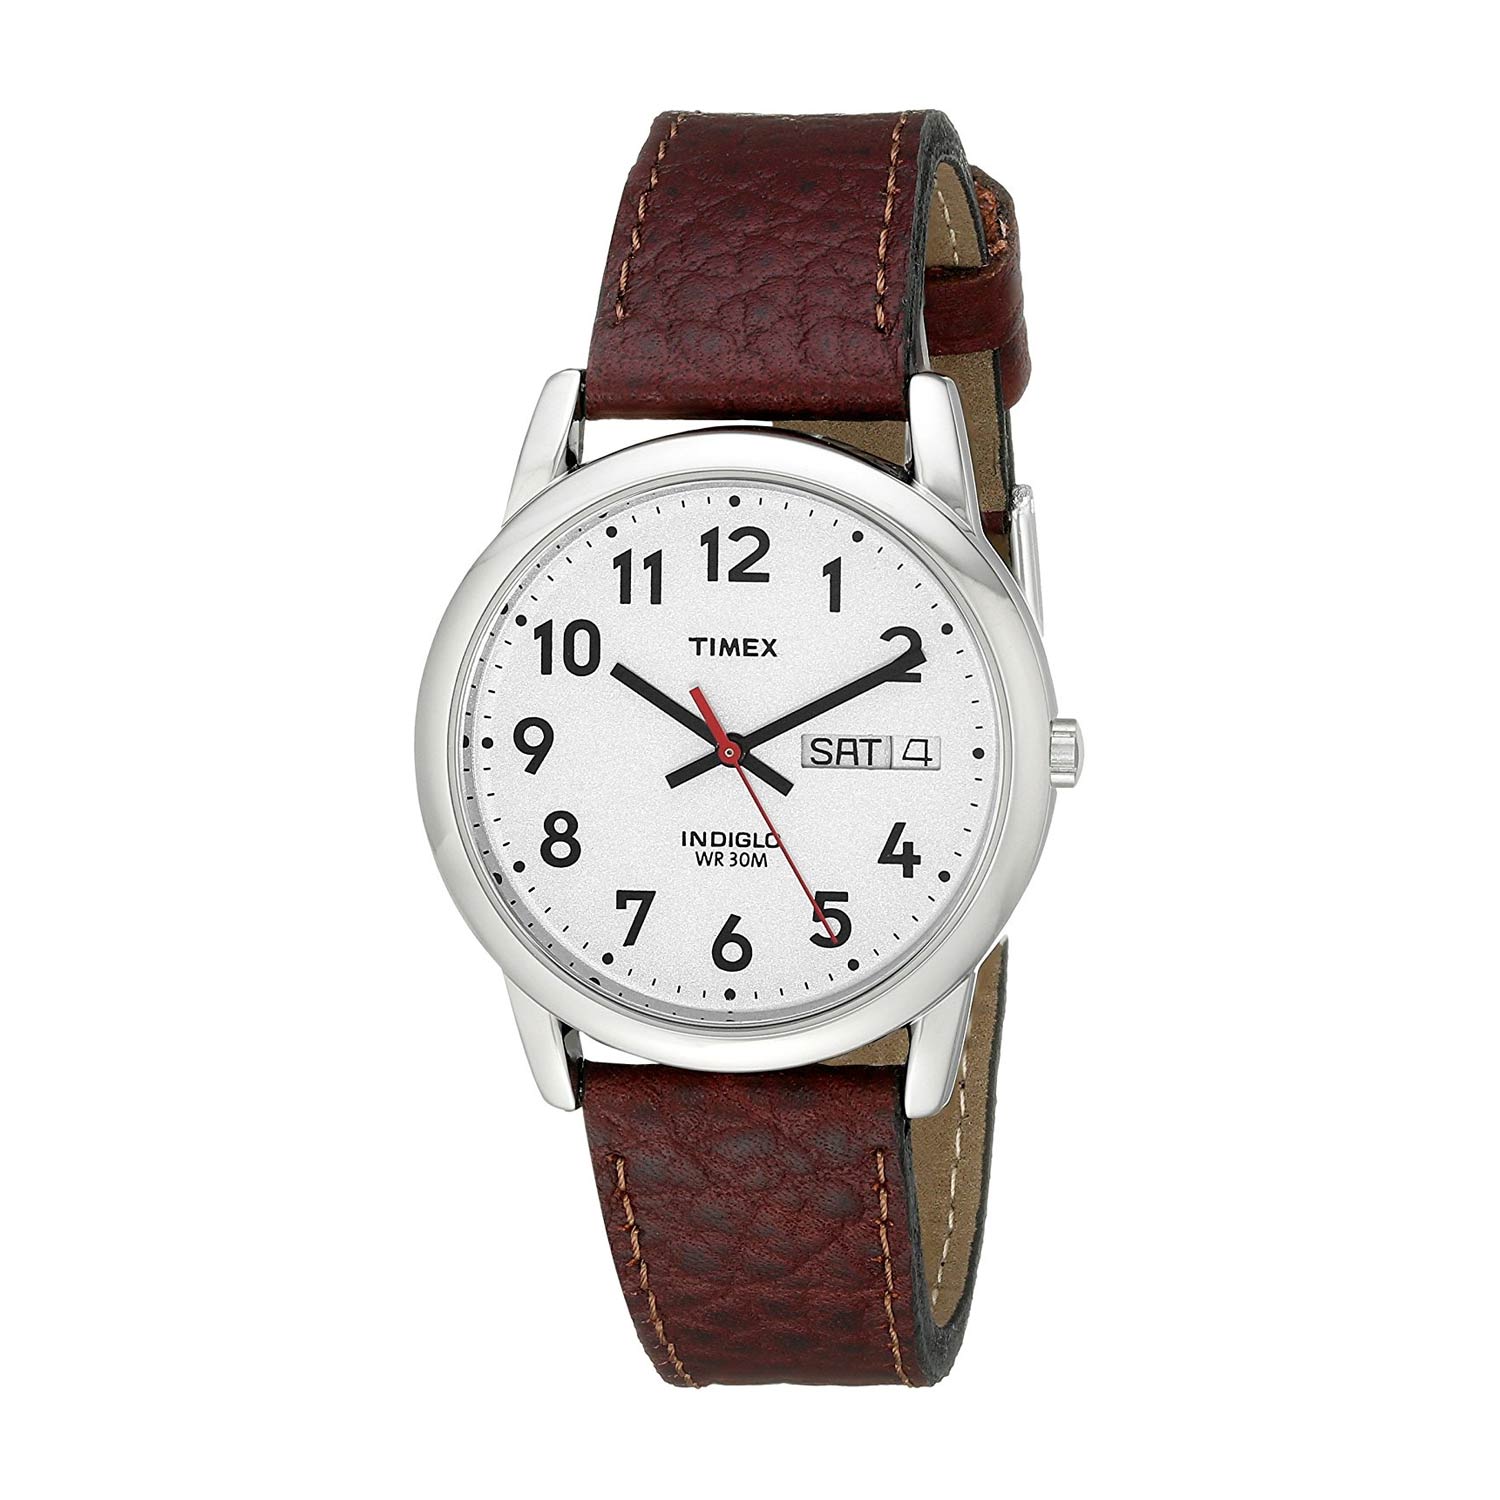 Timex-Easy-Reader-T20041-Herrenuhr-kompakte-Dresswatch-mit-stilvollem-Lederarmband